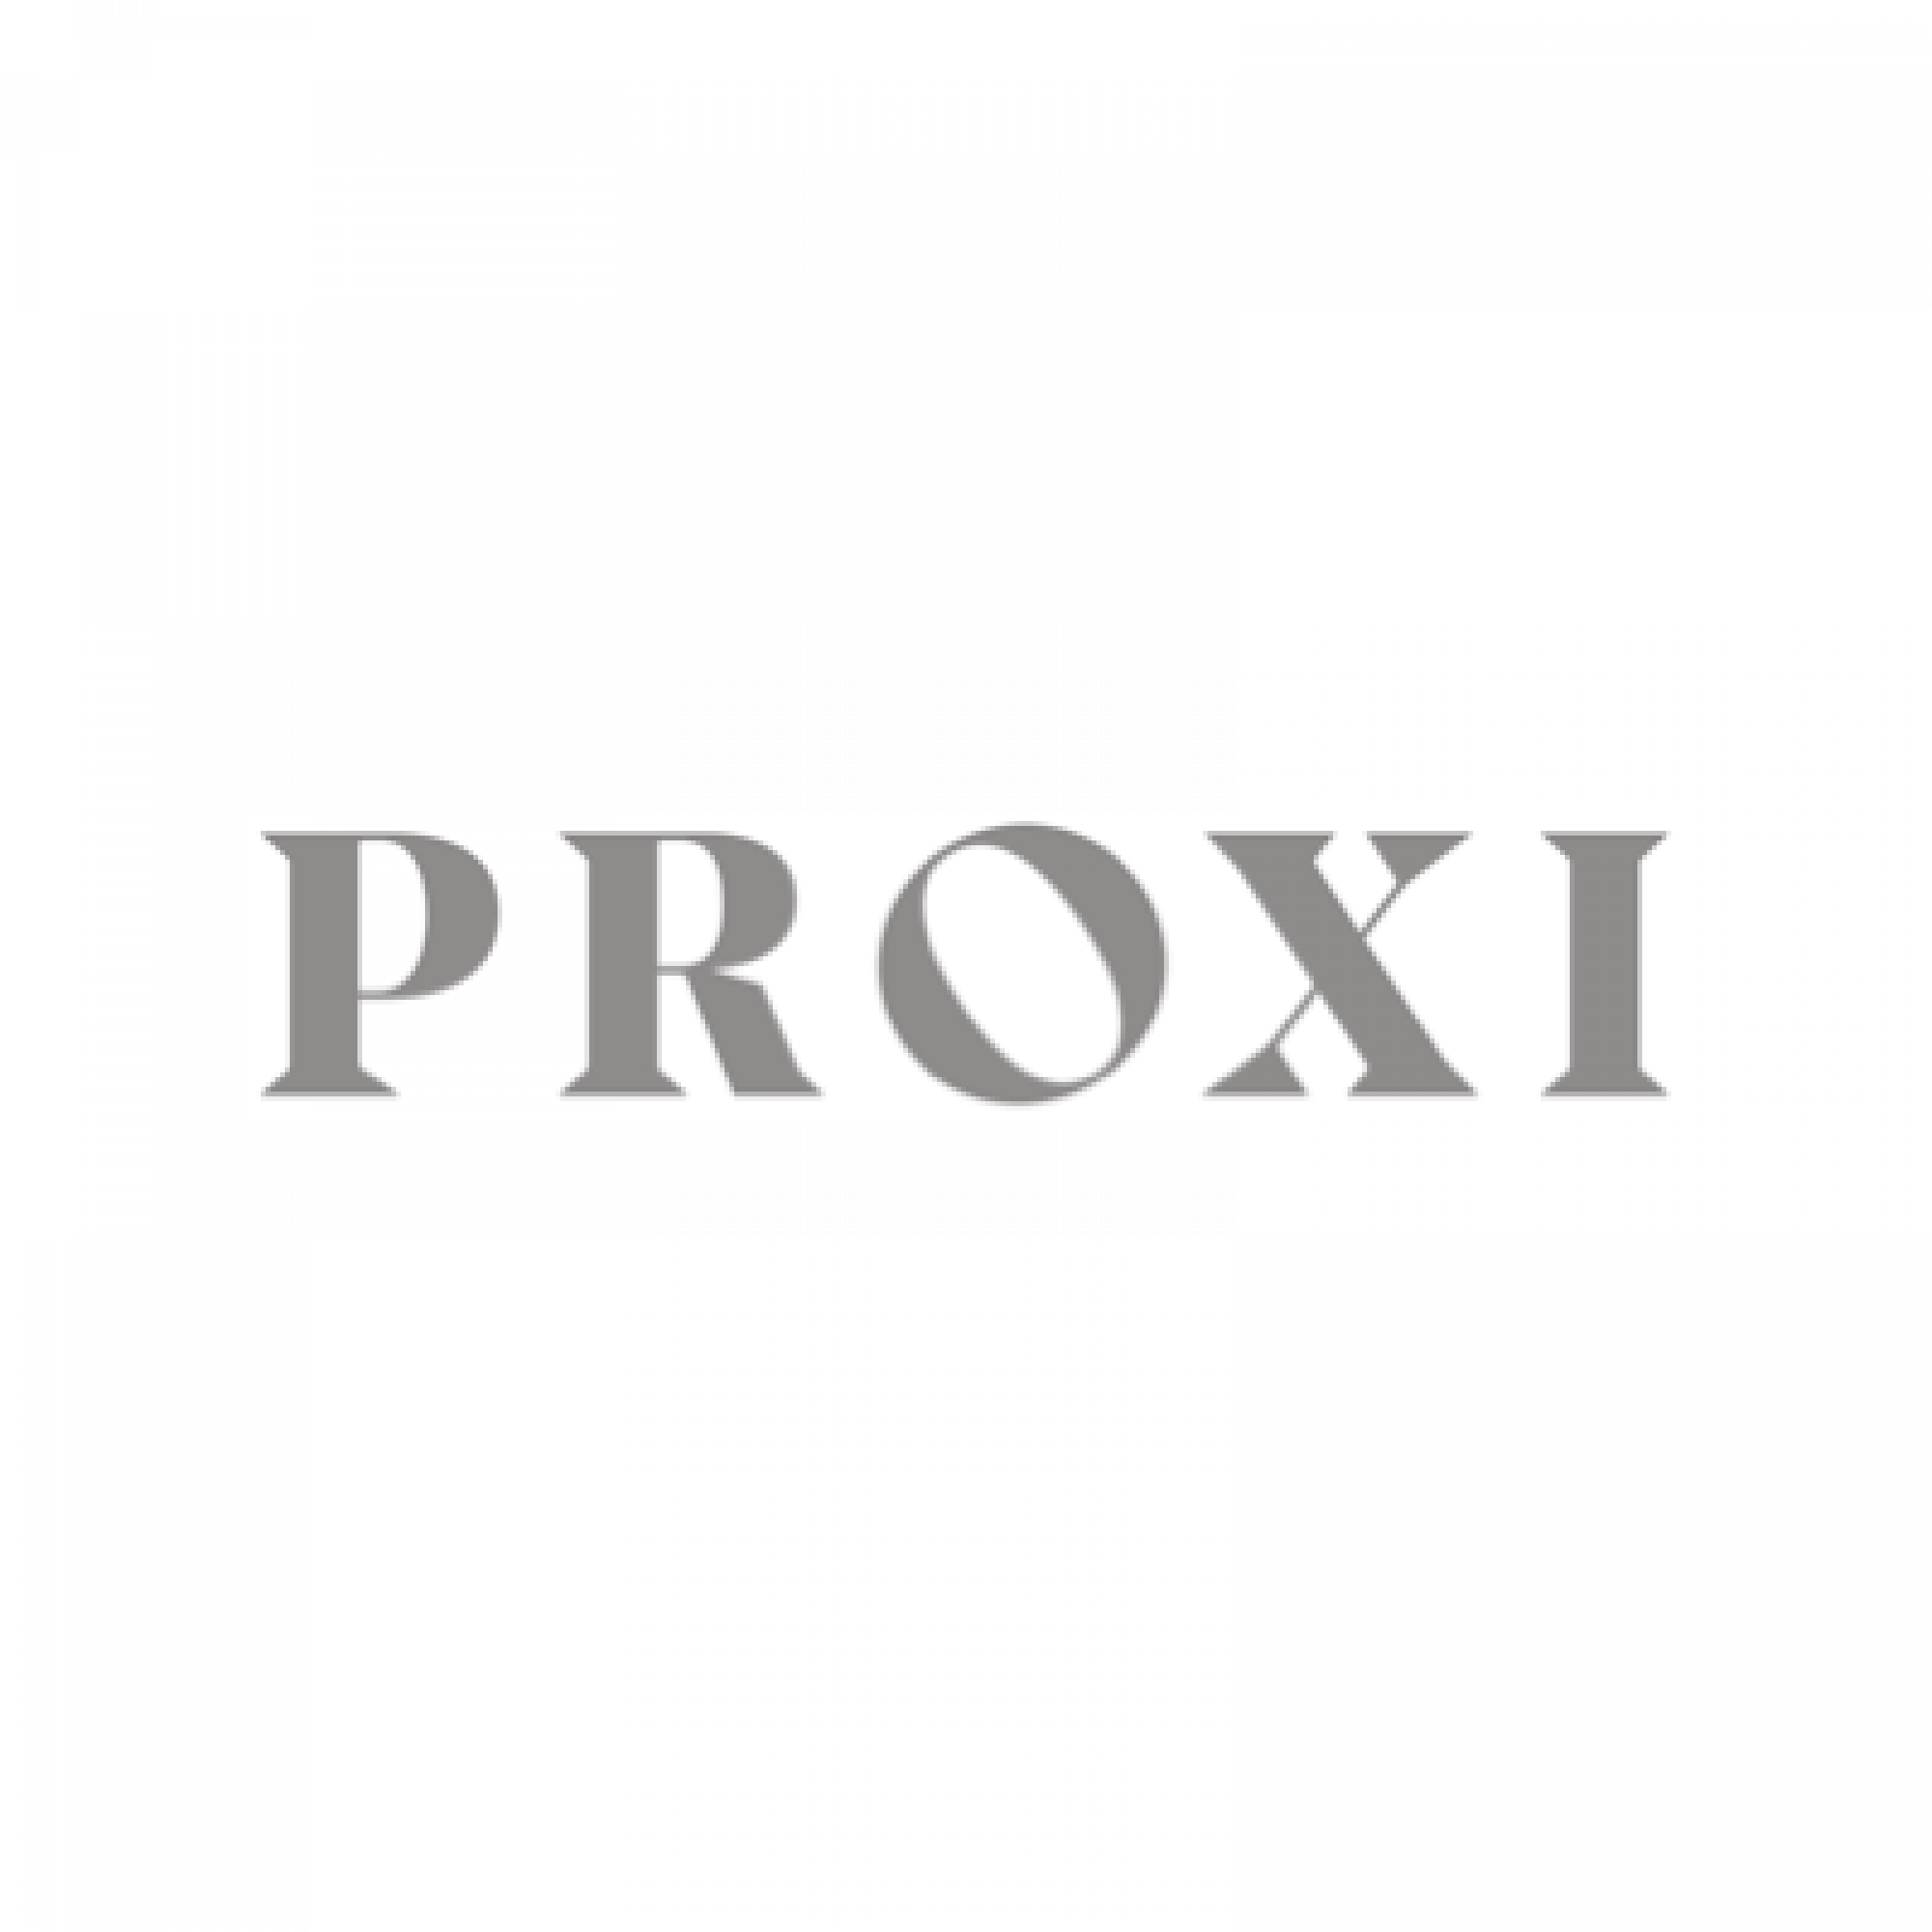 Proxi squashed